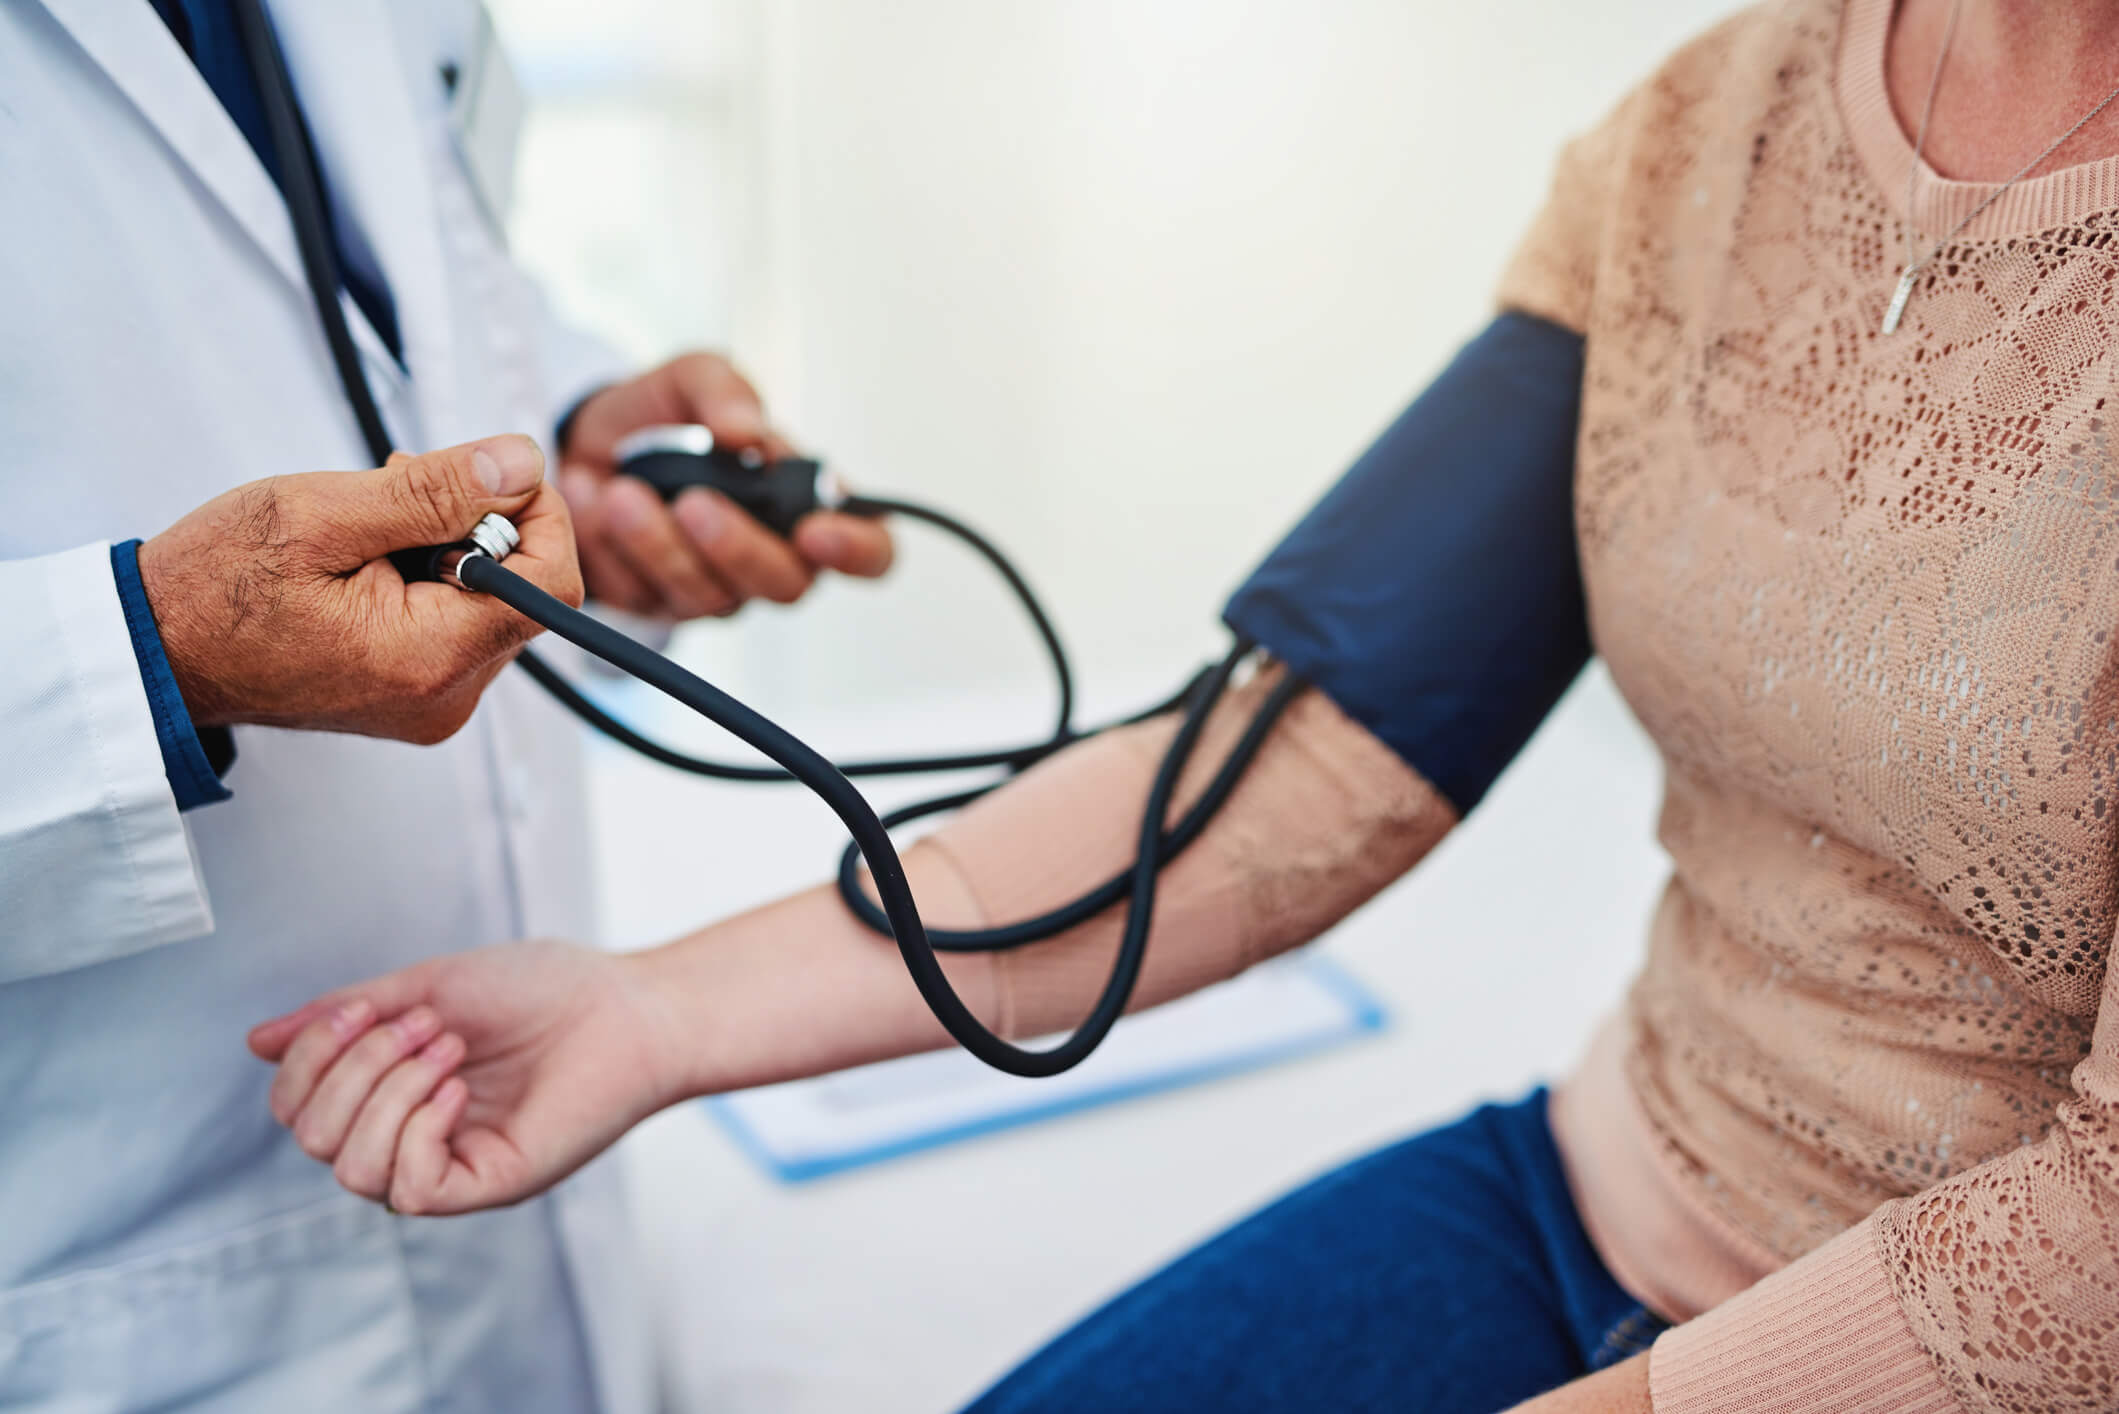 Pressão arterial de mulheres deve ser aferida de forma diferente, diz estudo